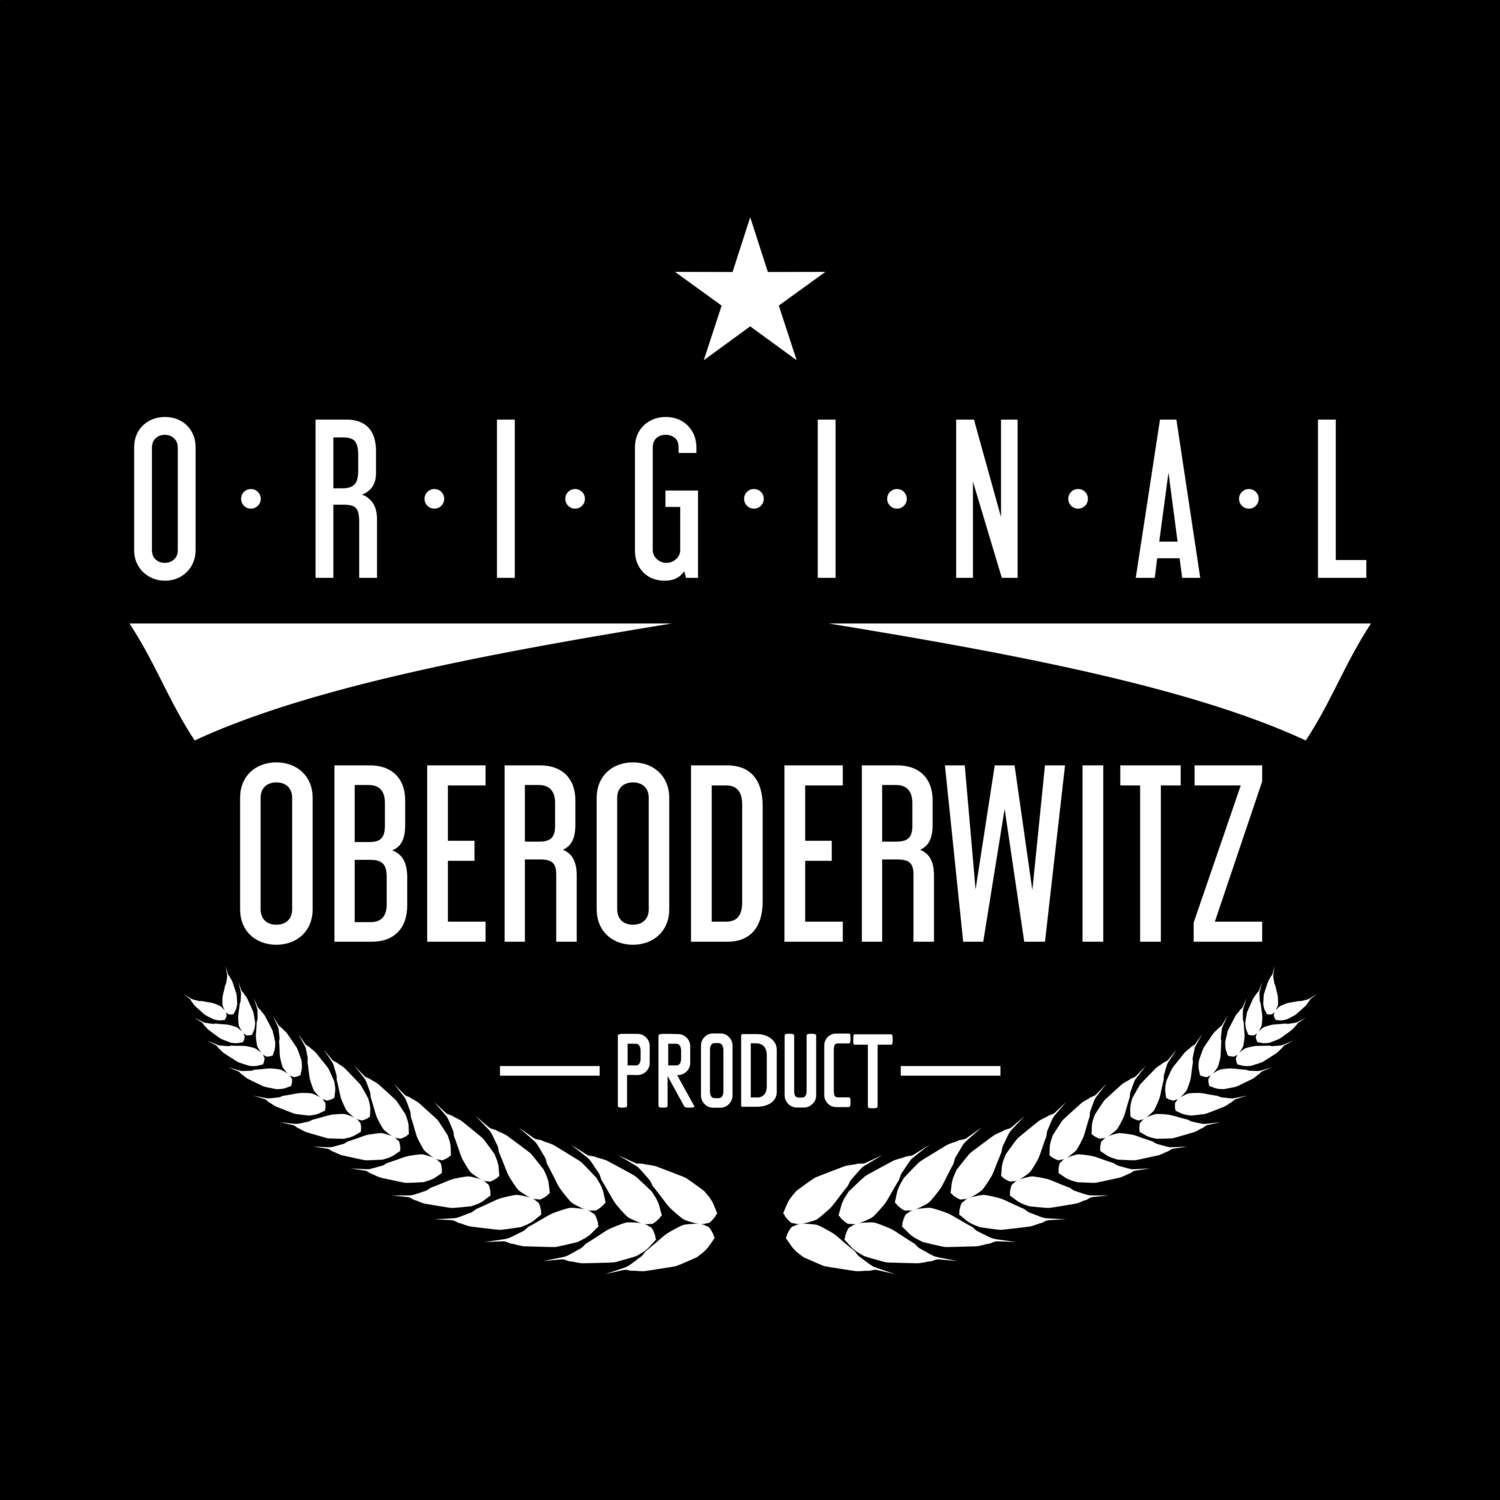 Oberoderwitz T-Shirt »Original Product«